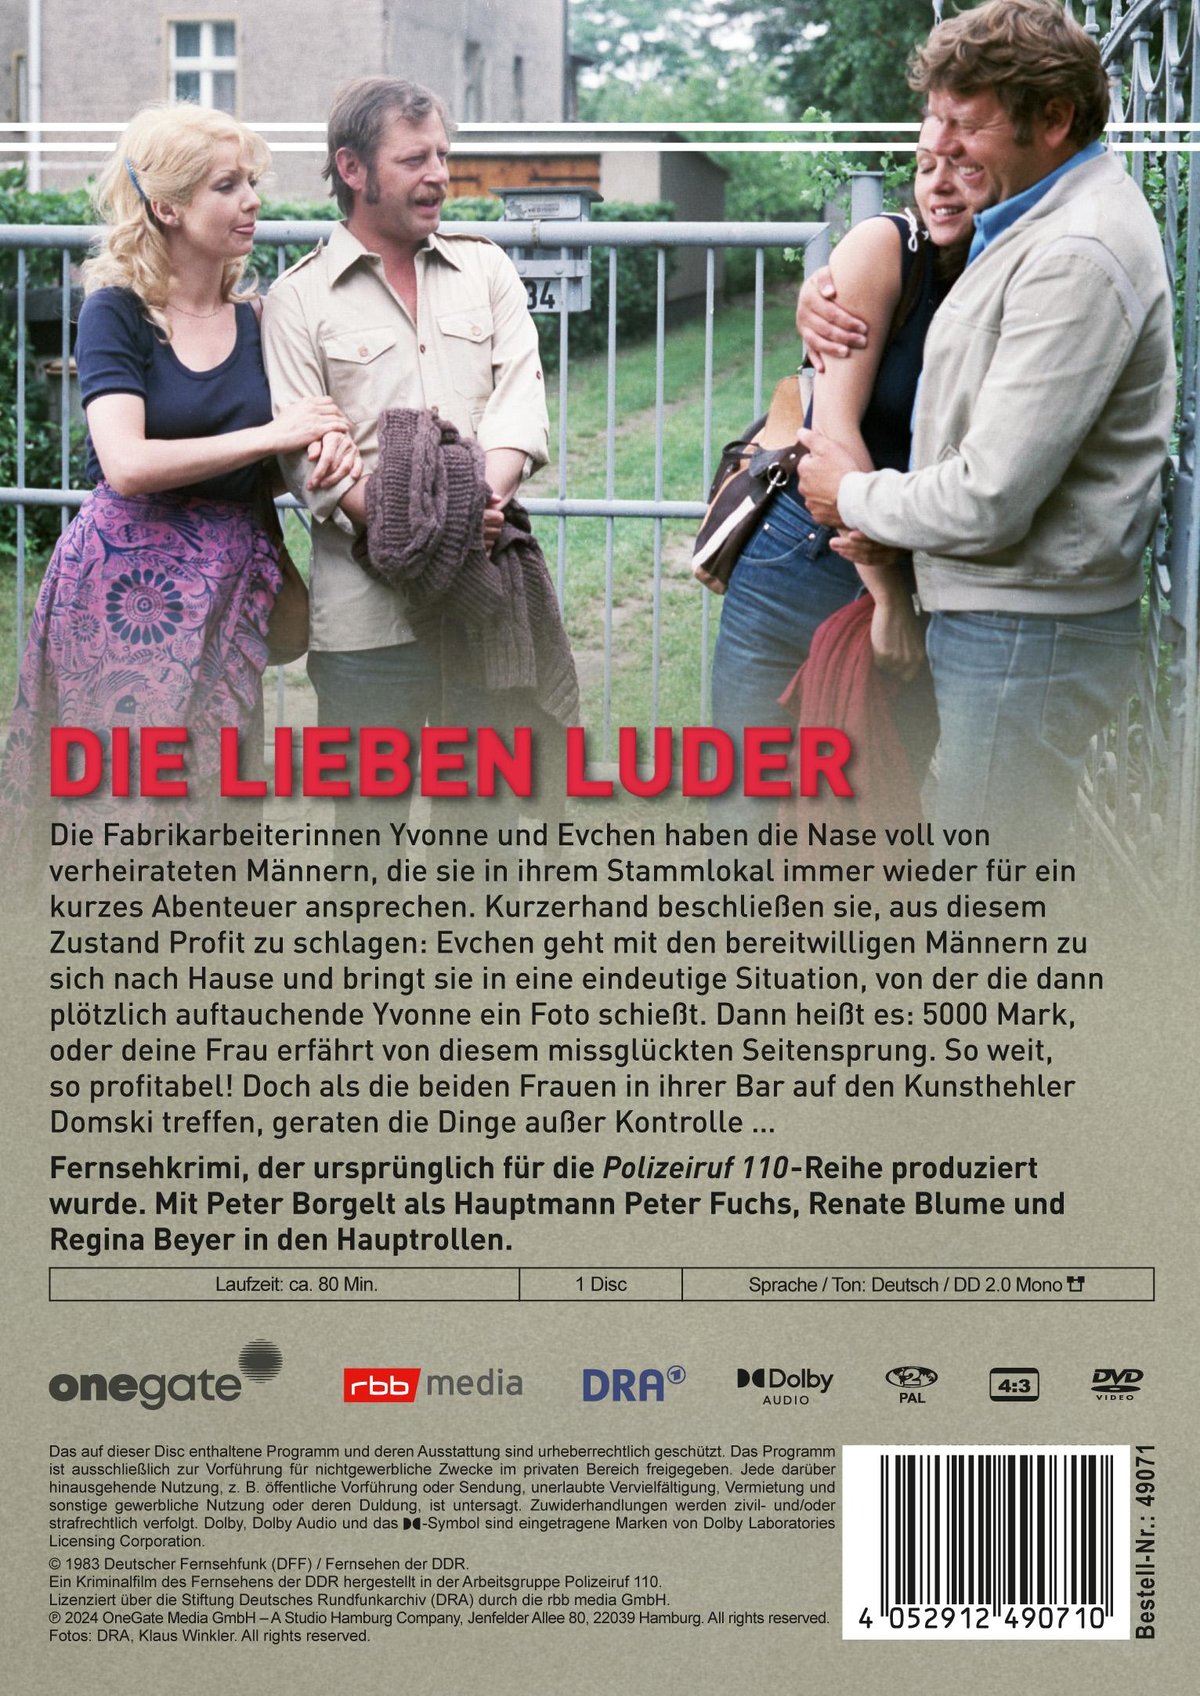 Die lieben Luder (DDR TV-Archiv)  (DVD)